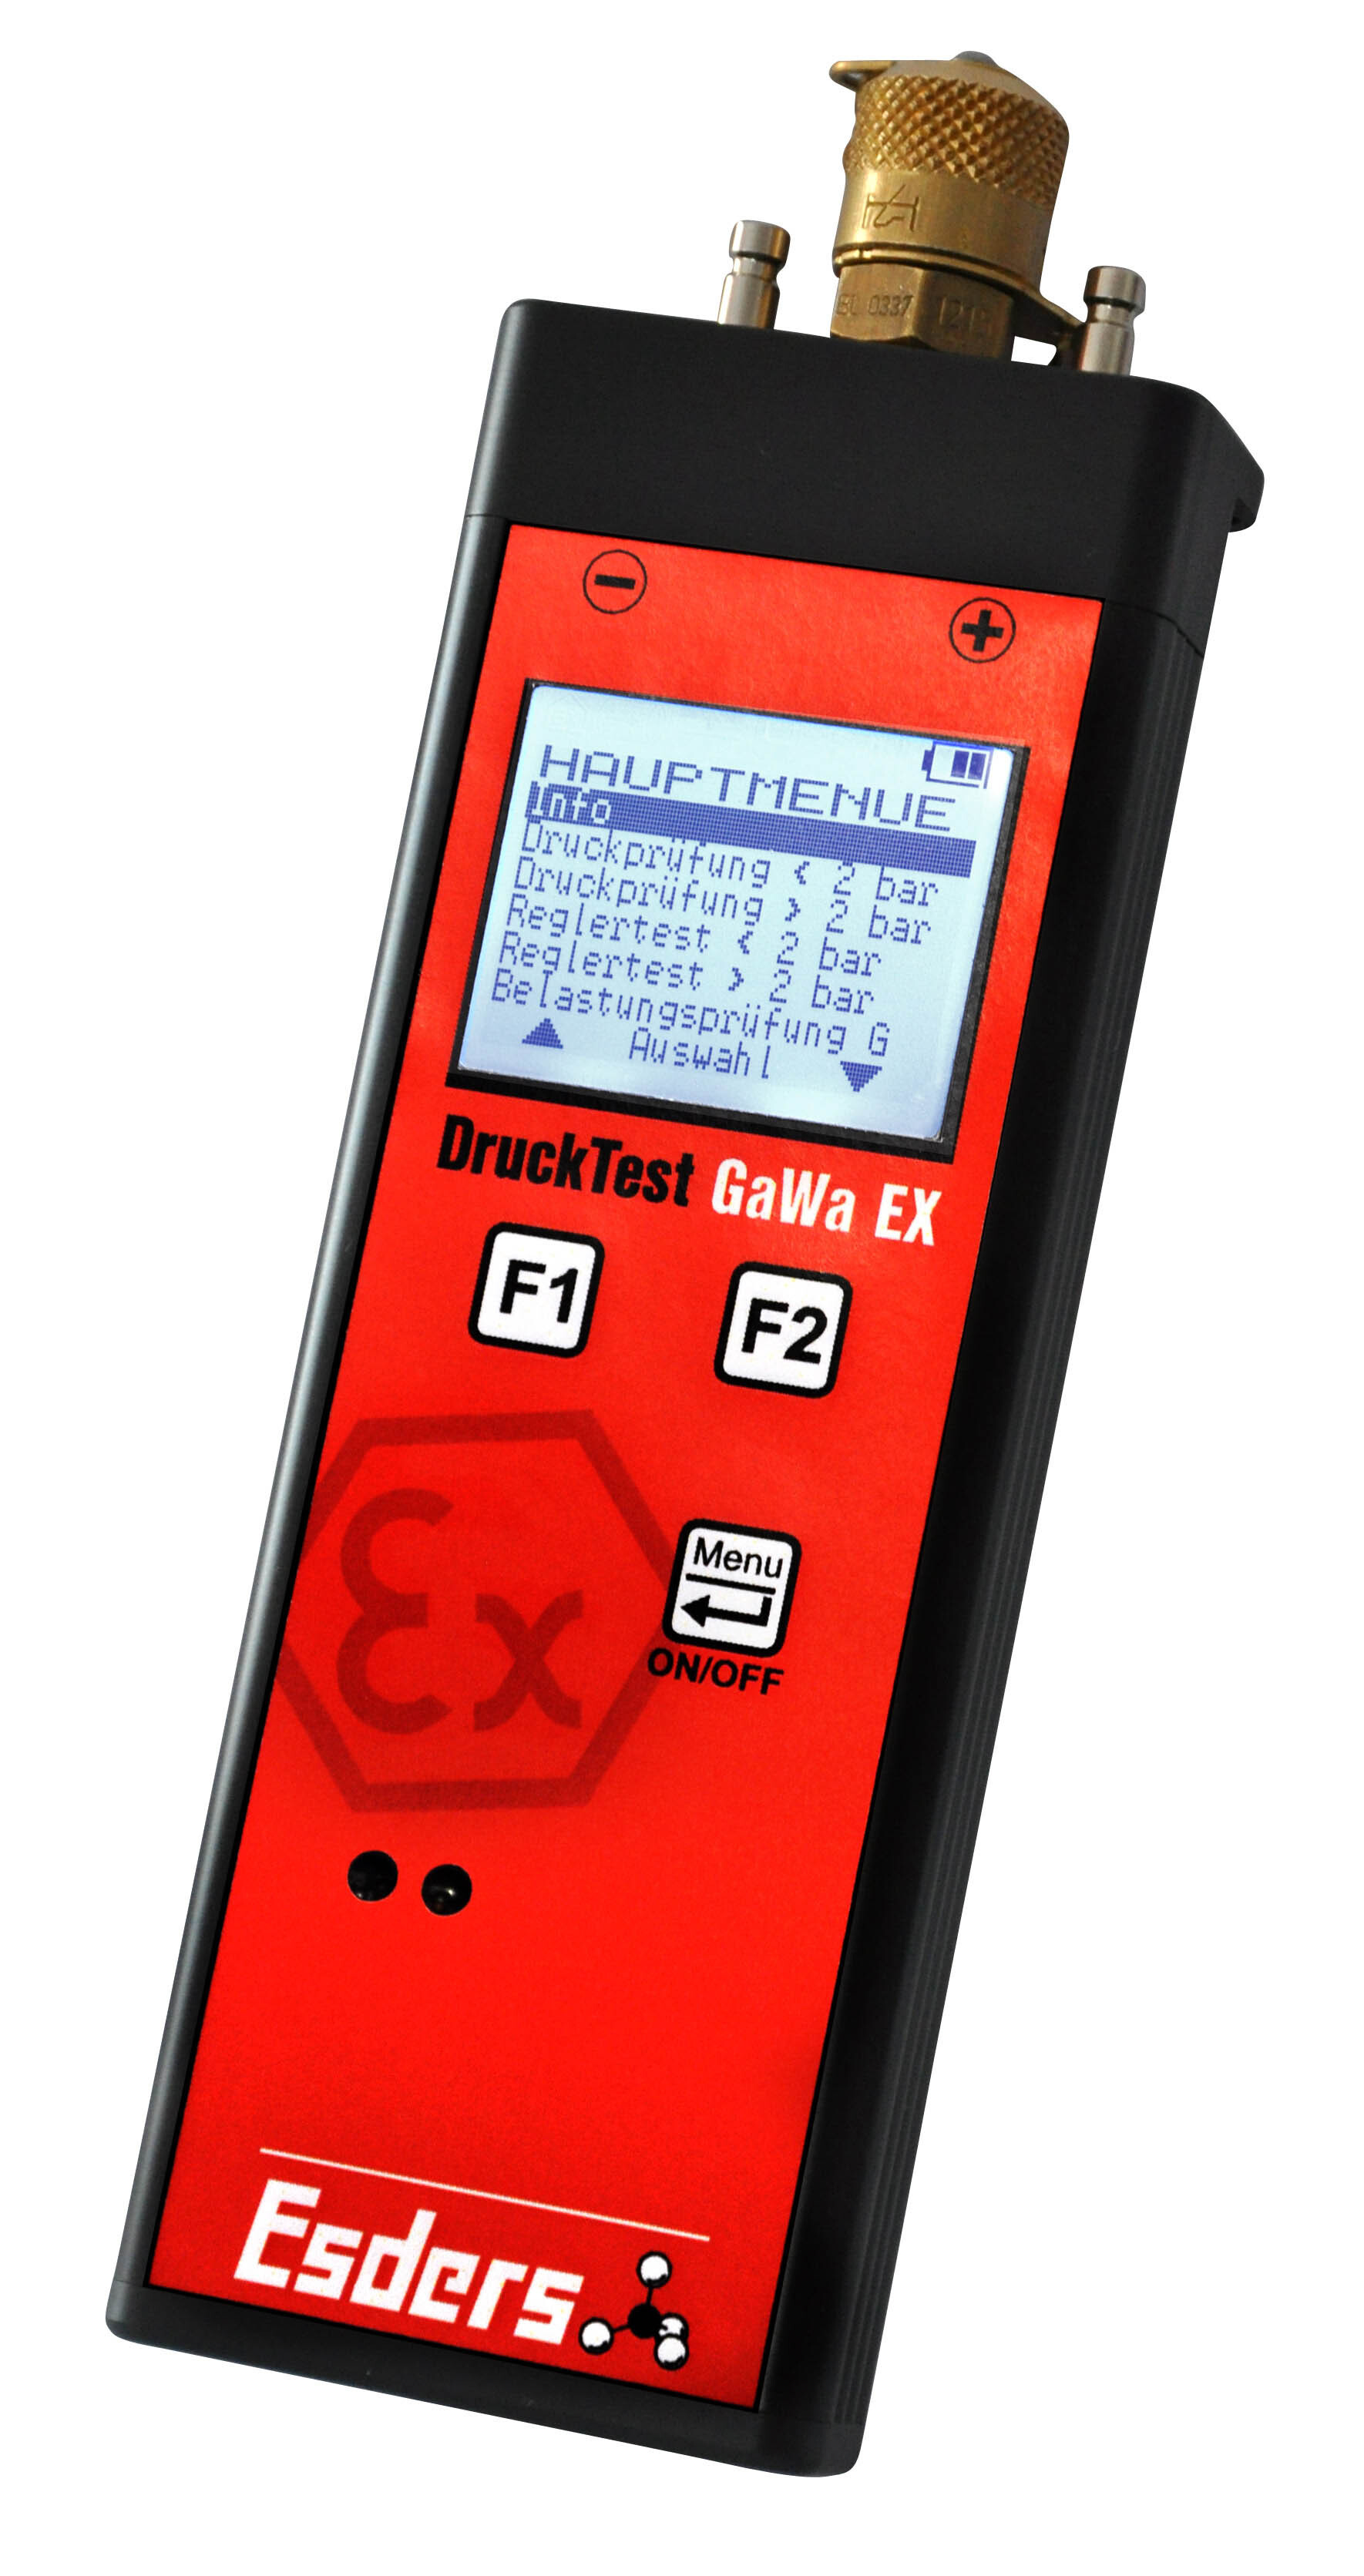 DruckTest GaWa EX HMG2 Batterie 2/100 bar
Messbereich 0-2 bar und 0-100 bar